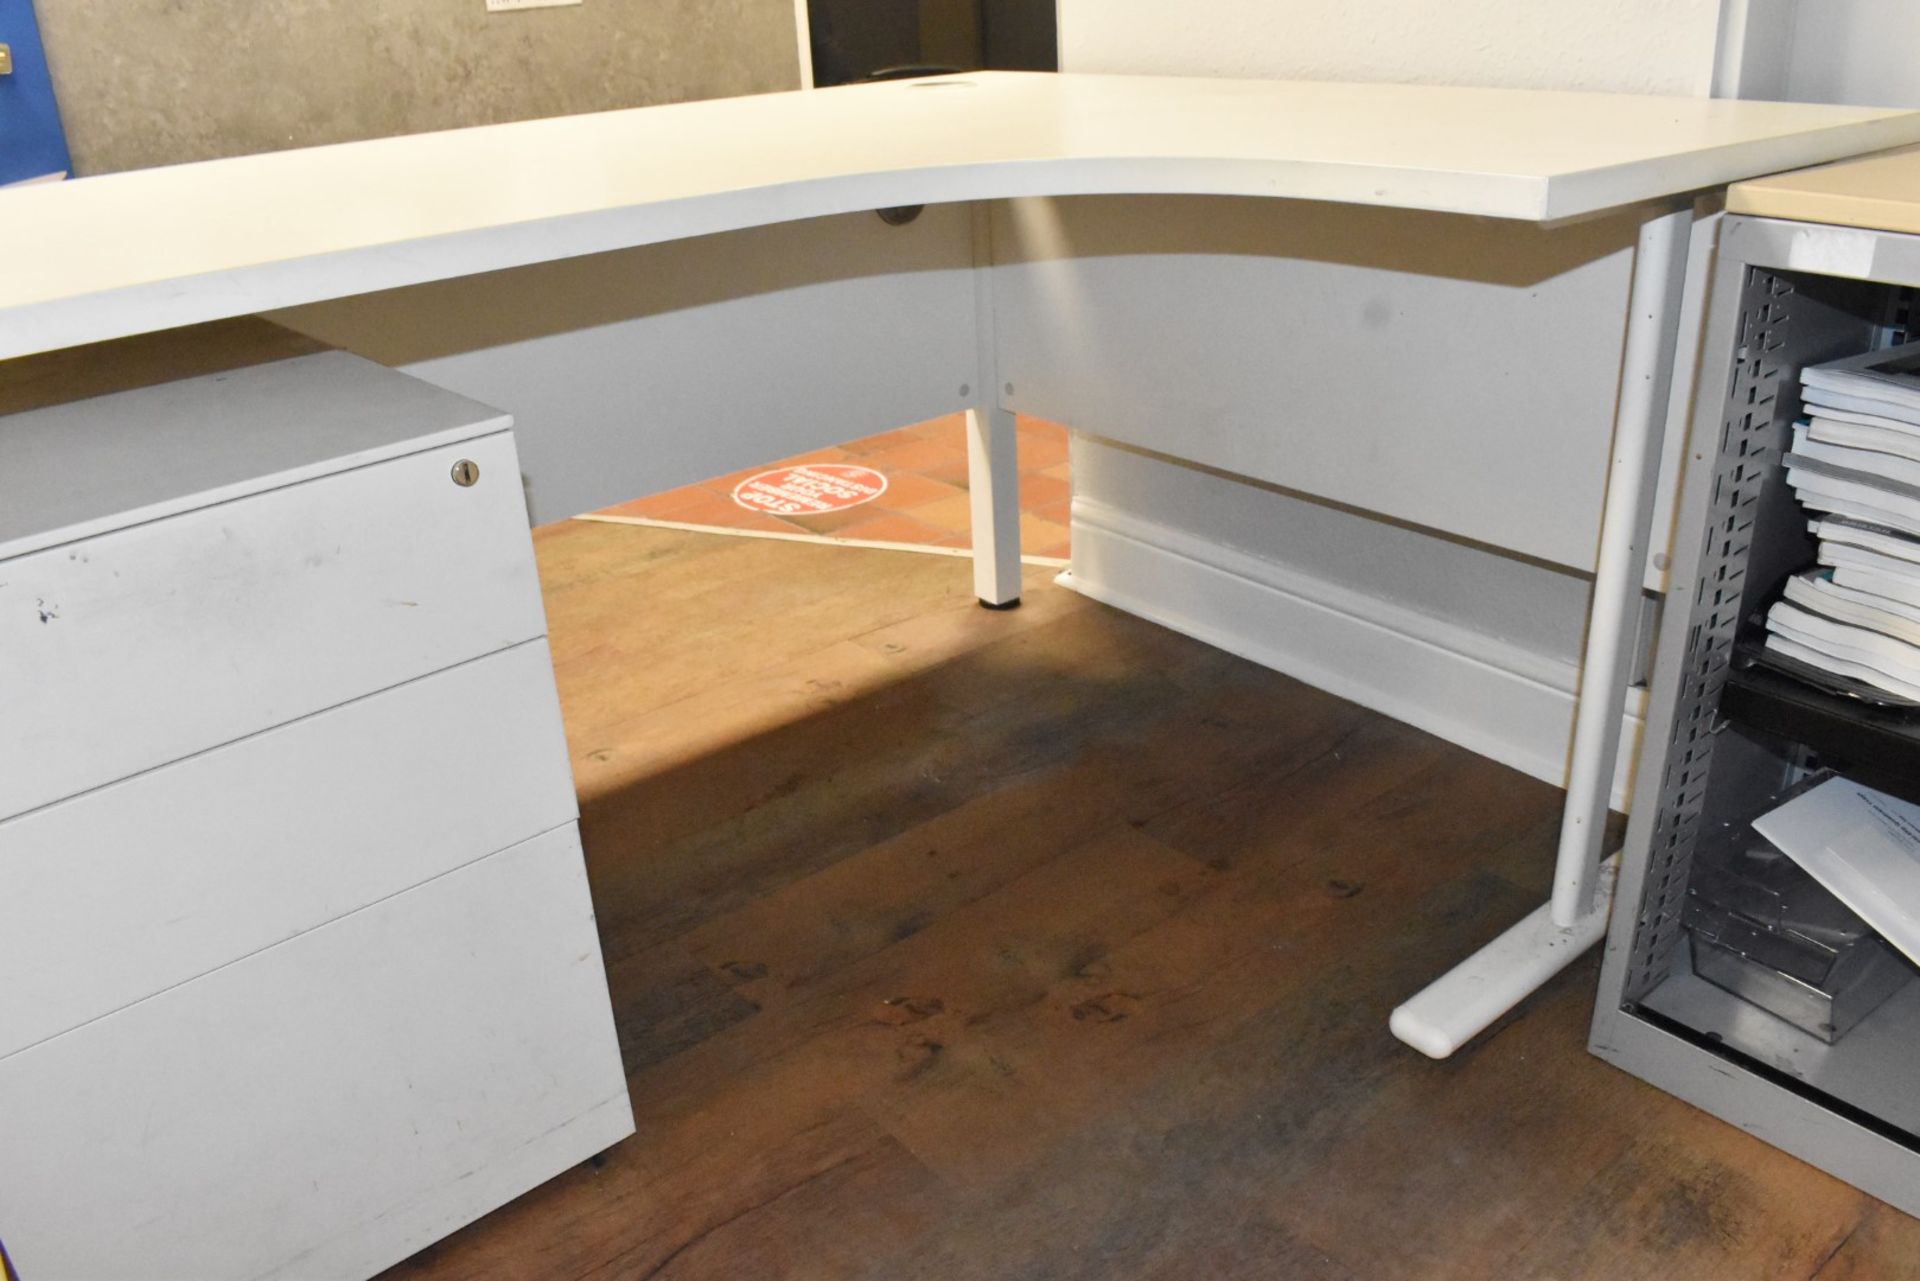 1 x Office Furniture Set Including a Corner Desk, Drawer Pedestal and Sliding Door Cabinet - Image 10 of 10